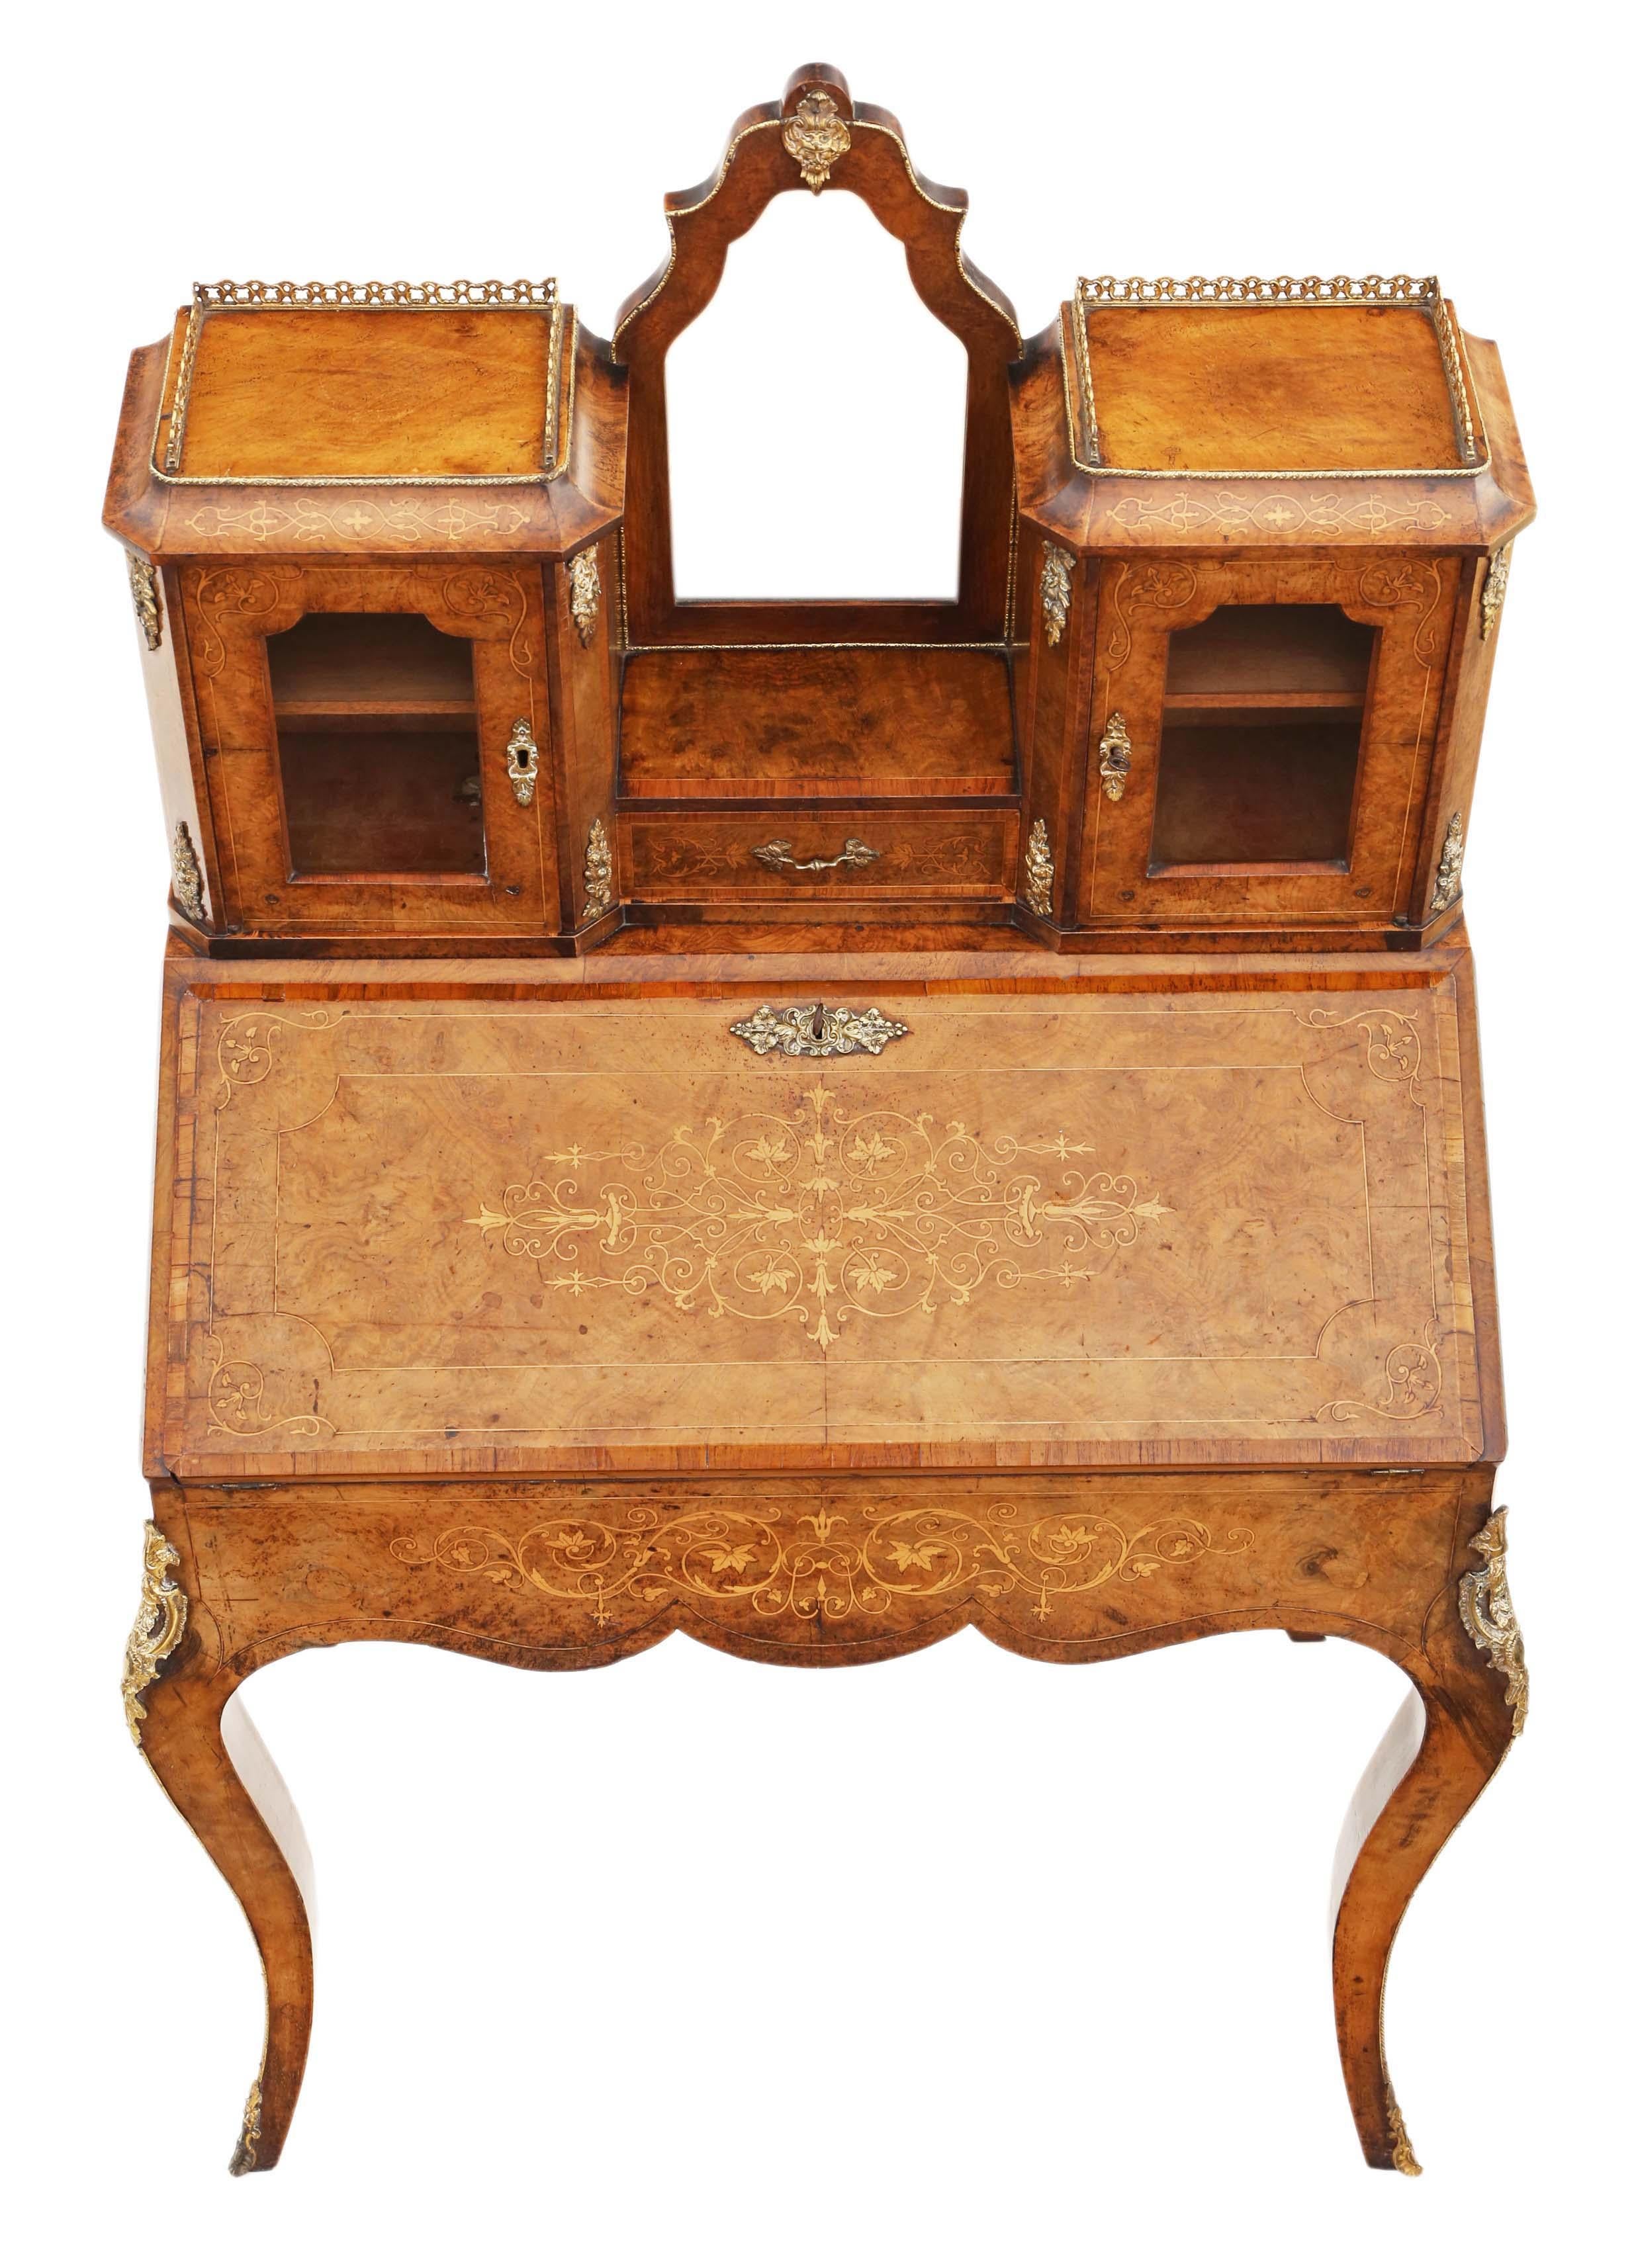 19th Century Antique Fine Quality Inlaid Burr Walnut Bonheur De Jour Desk Writing Table For Sale